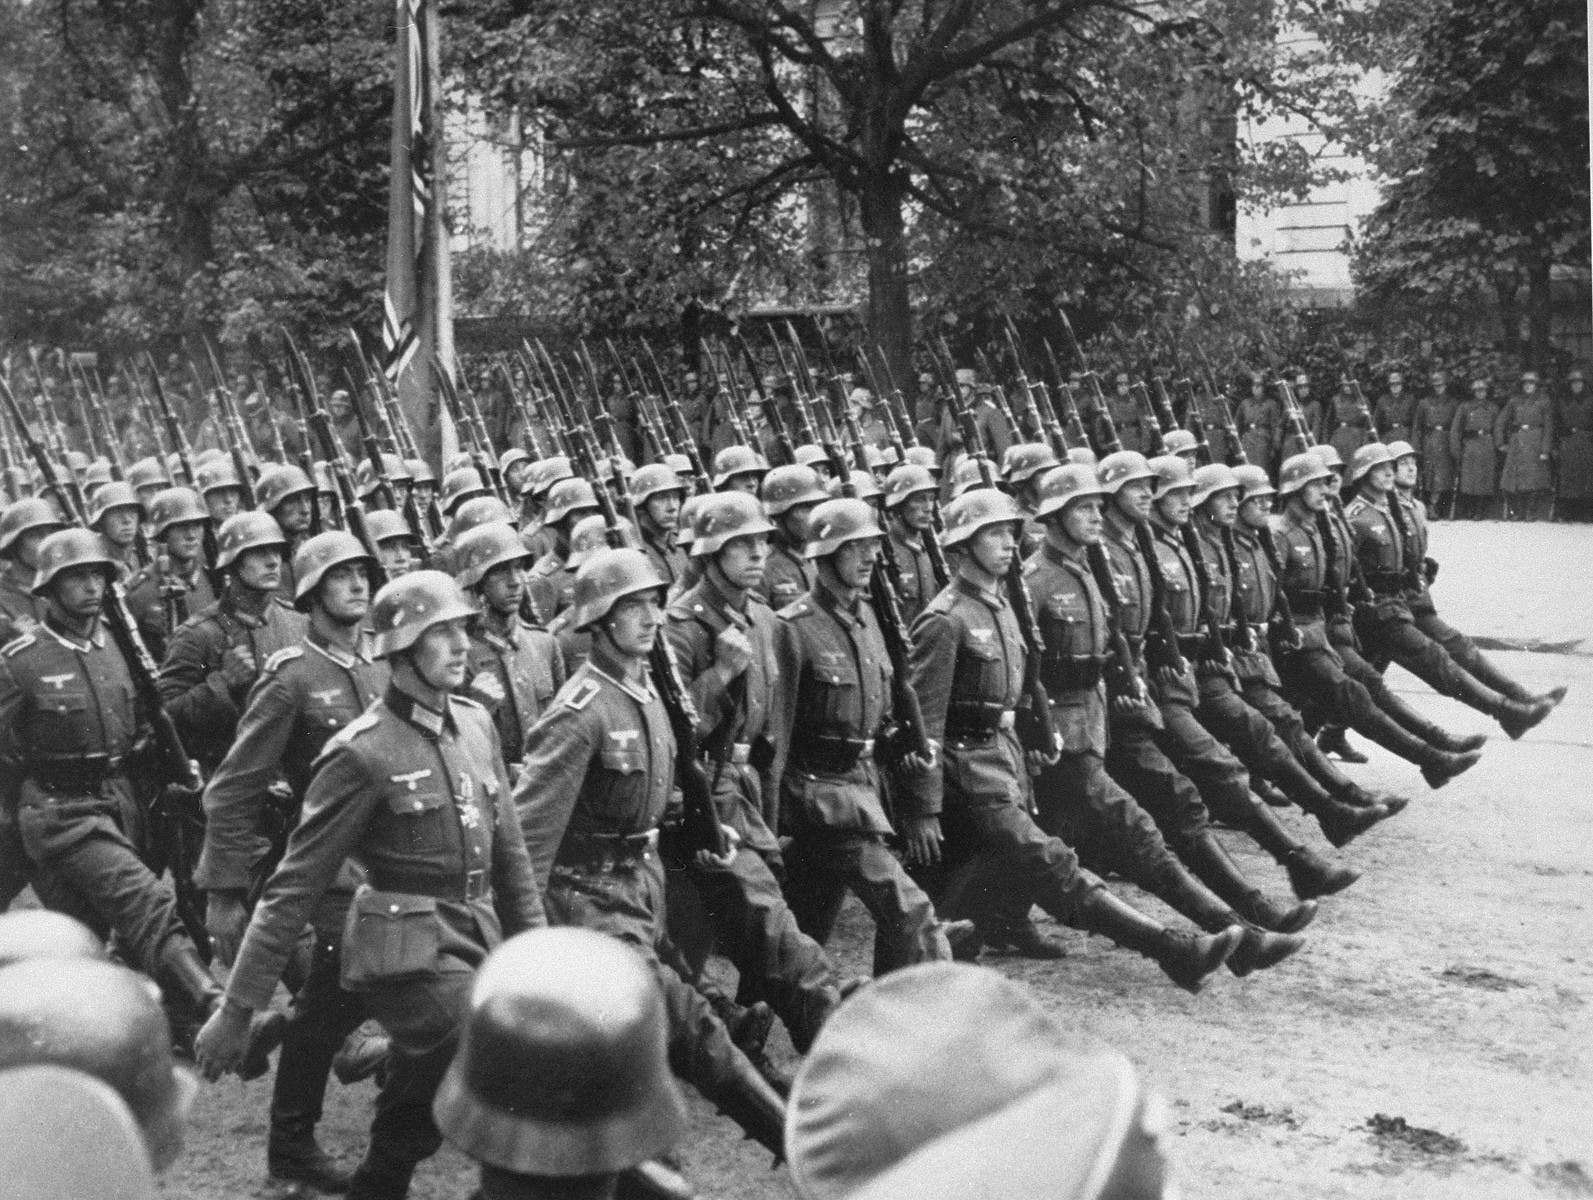 A side of German soldiers in World War II